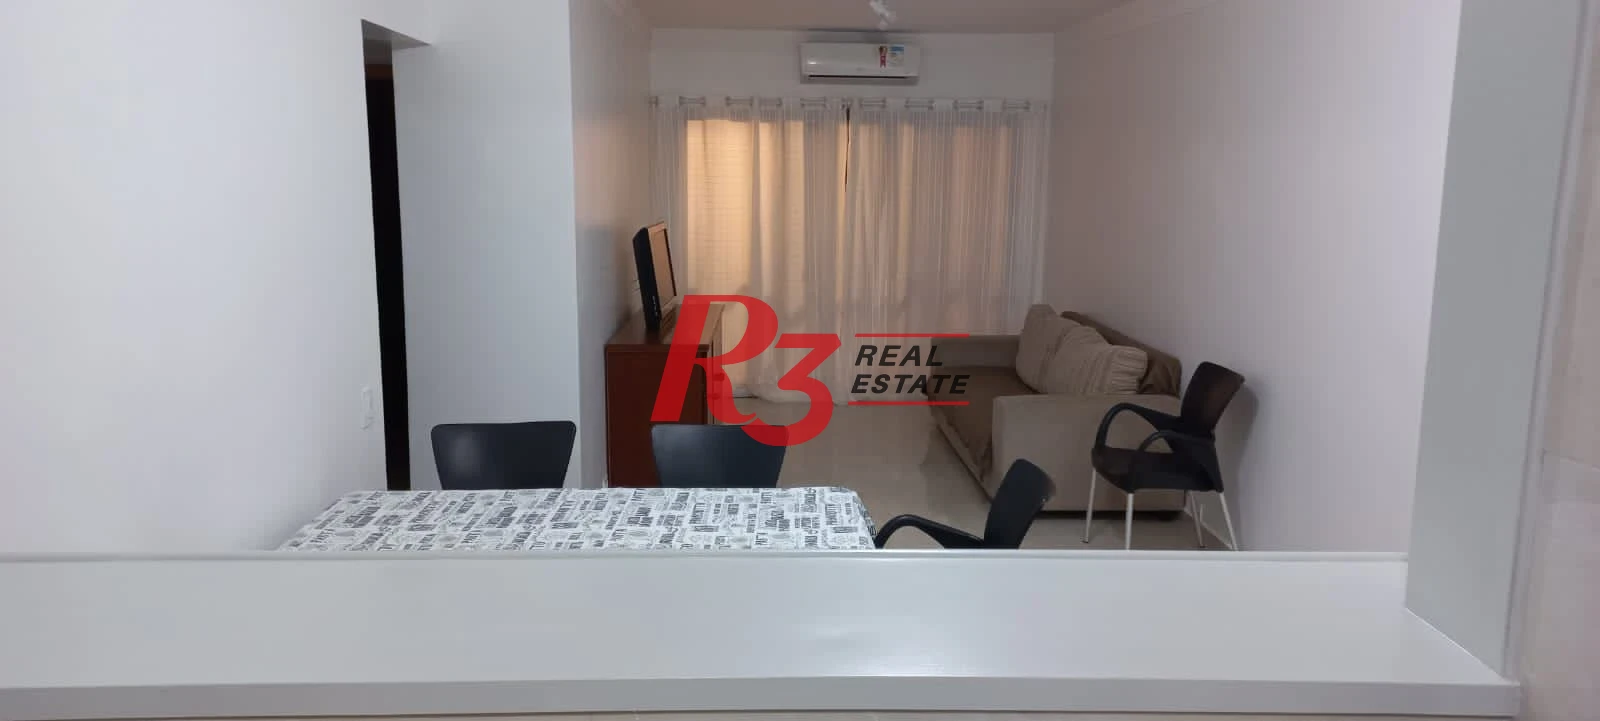 Apartamento com 3 dormitórios à venda - Pitangueiras - Guarujá/SP